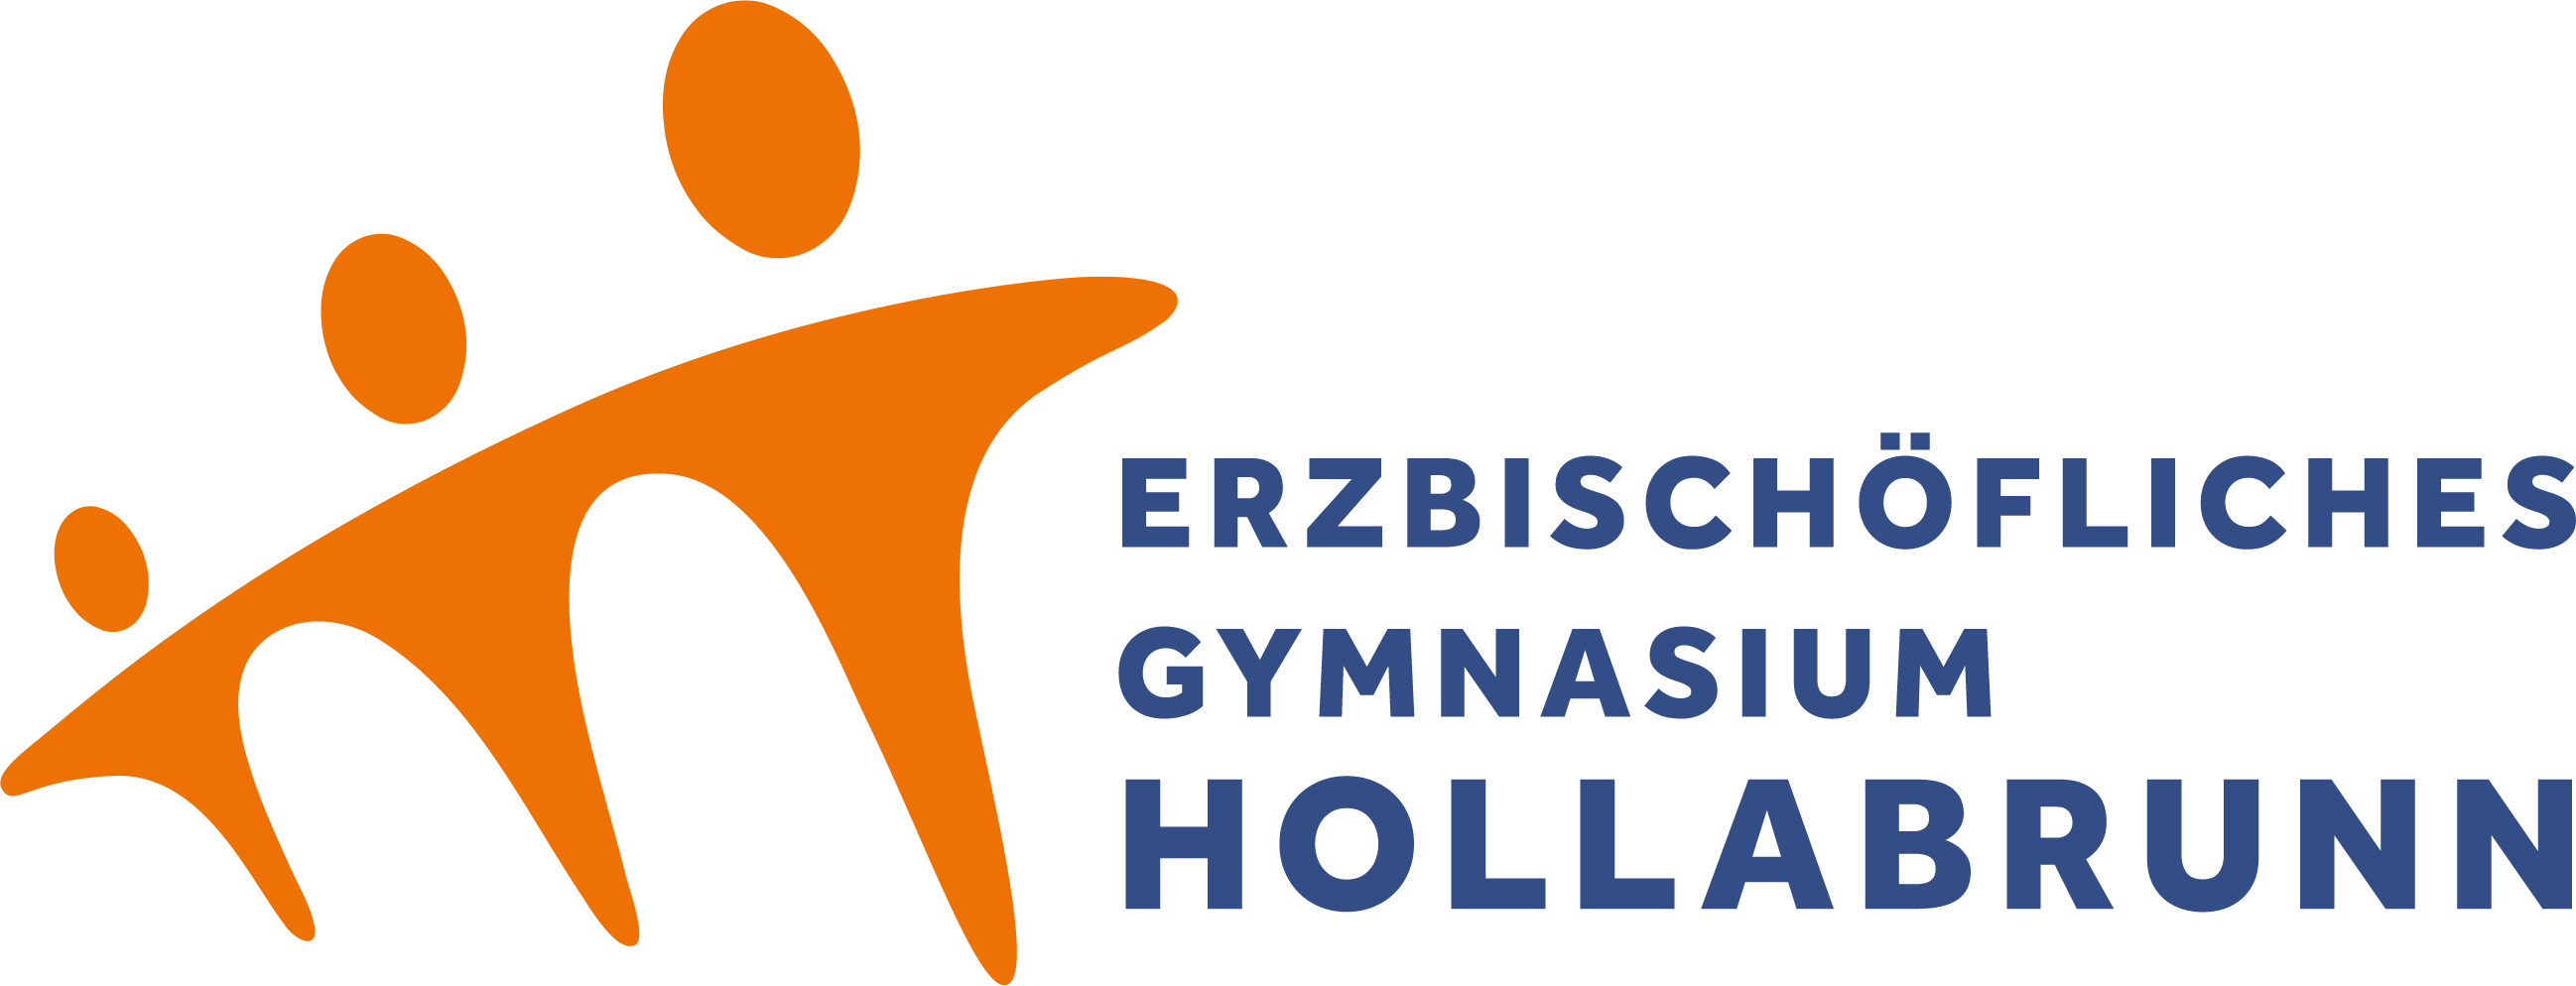 Erzbischöfliches Gymnasium Hollabrunn Logo